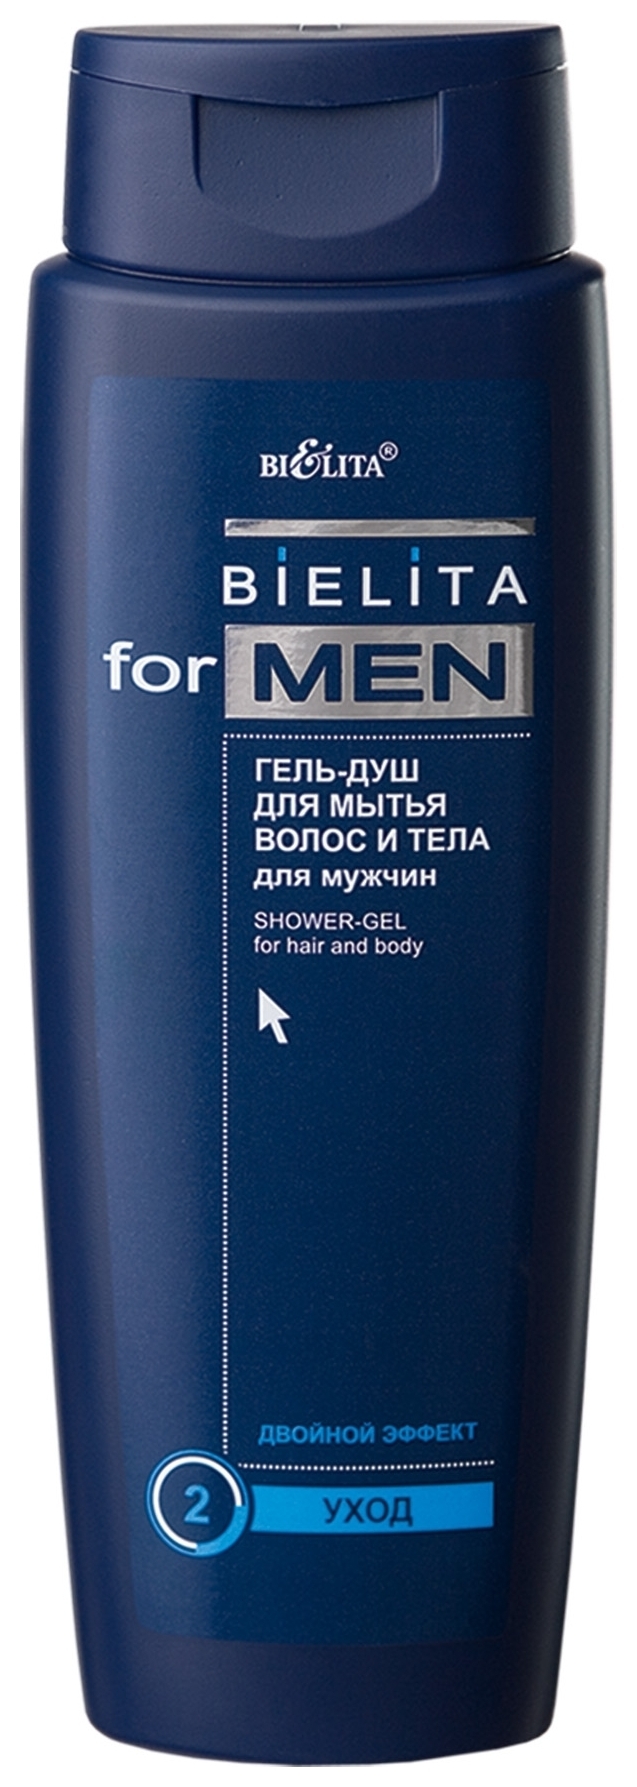 Гель-душ для мытья волос и тела Hair & Body Shower Gel